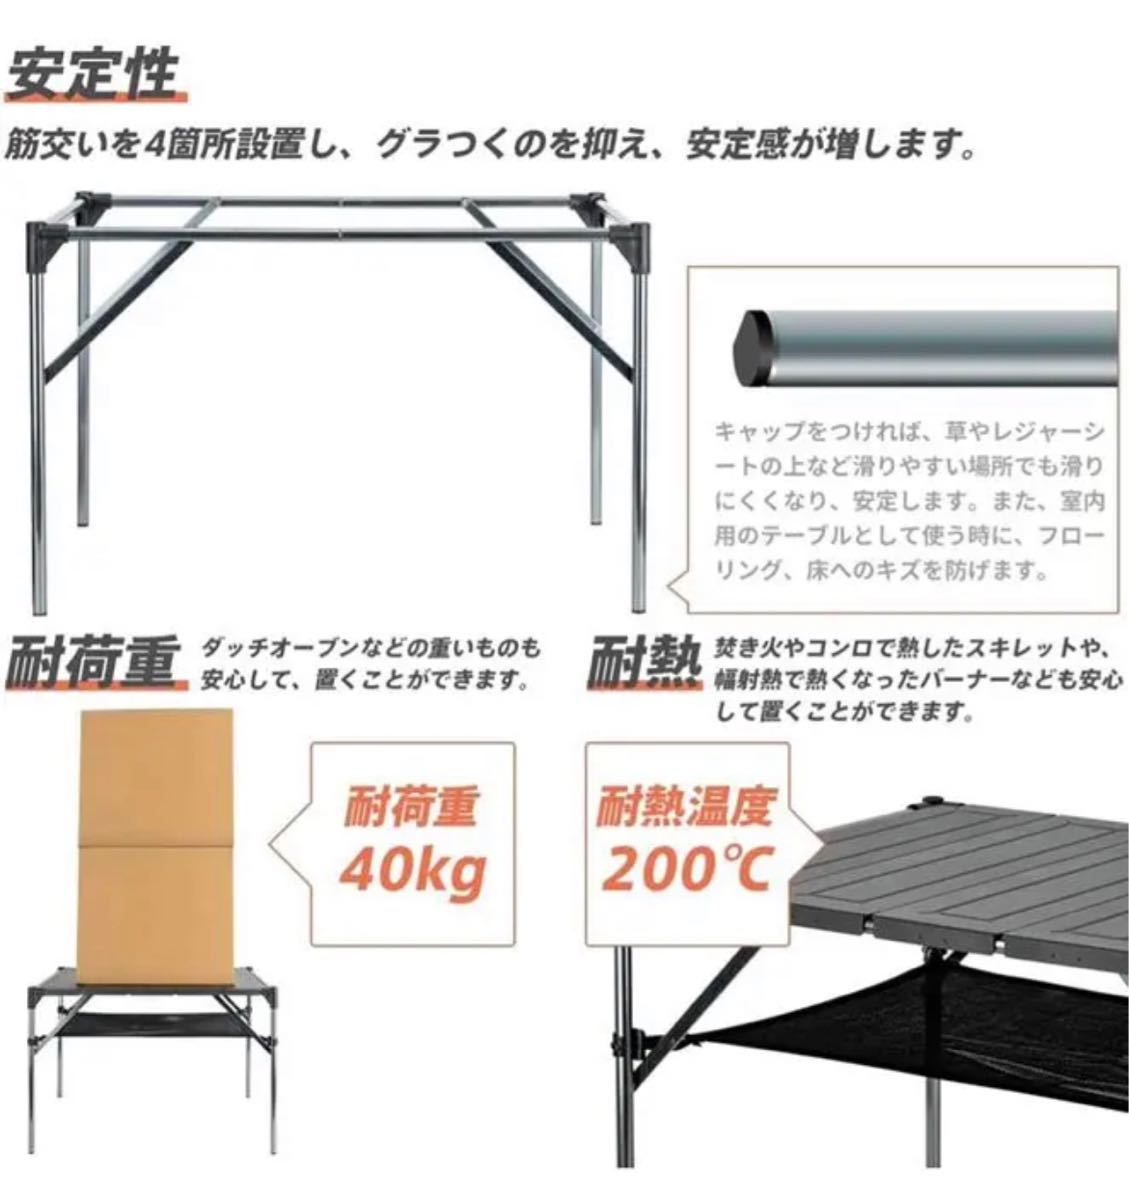 【大特価】アウトドアテーブル 折り畳み アルミ製  ロールテーブル キャンプ